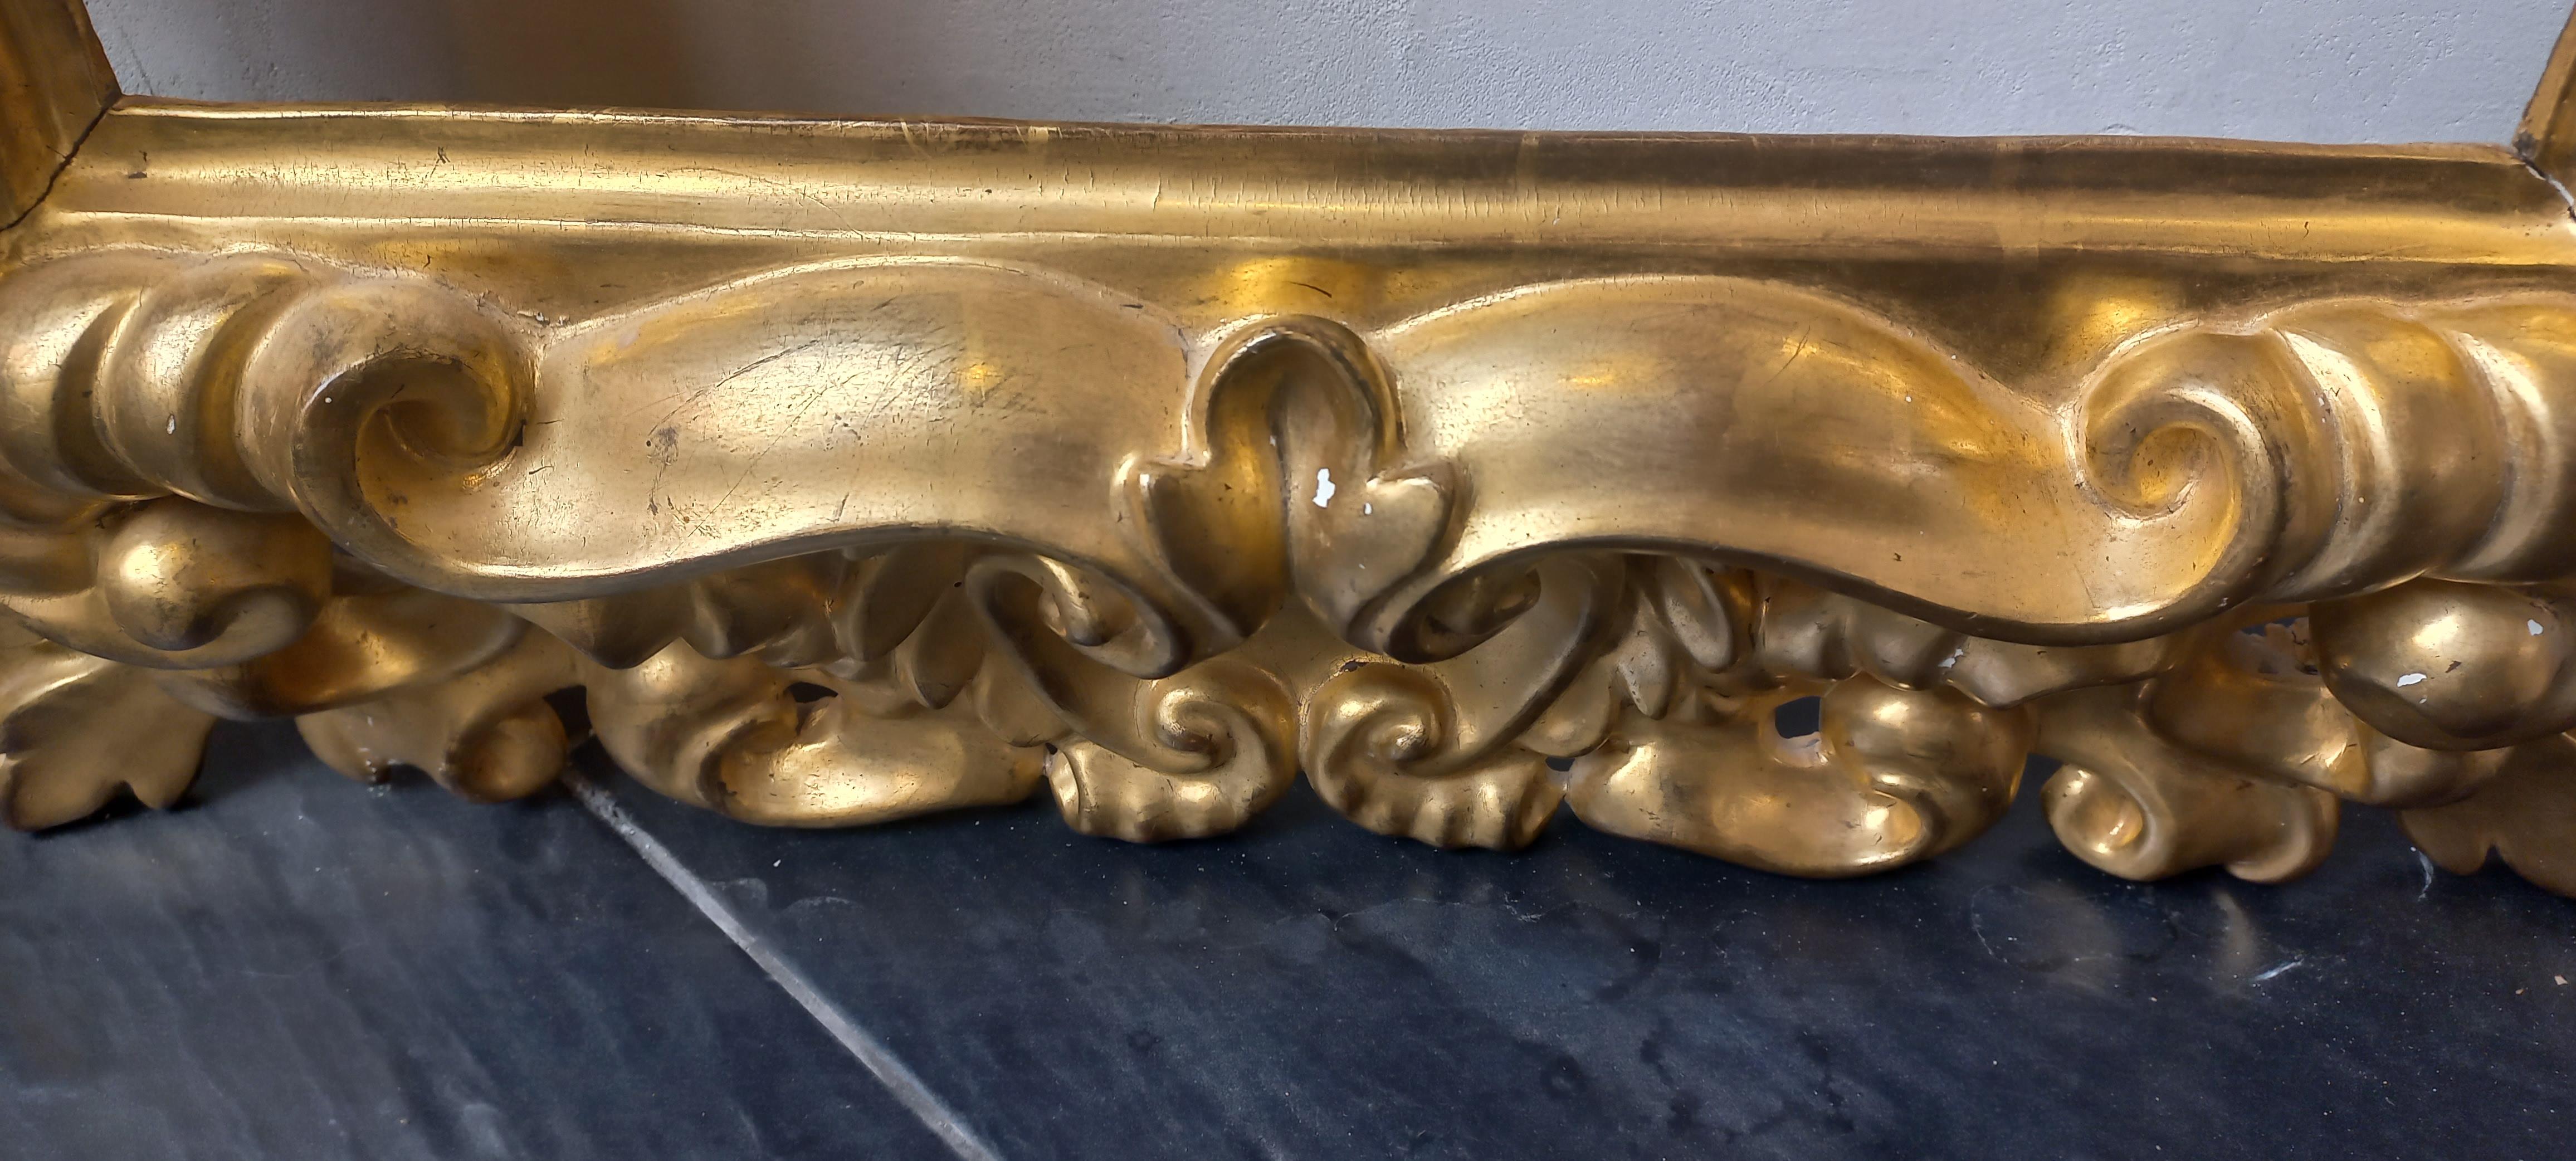 Italian Cornice intagliata in legno dorato a foglia d'oro